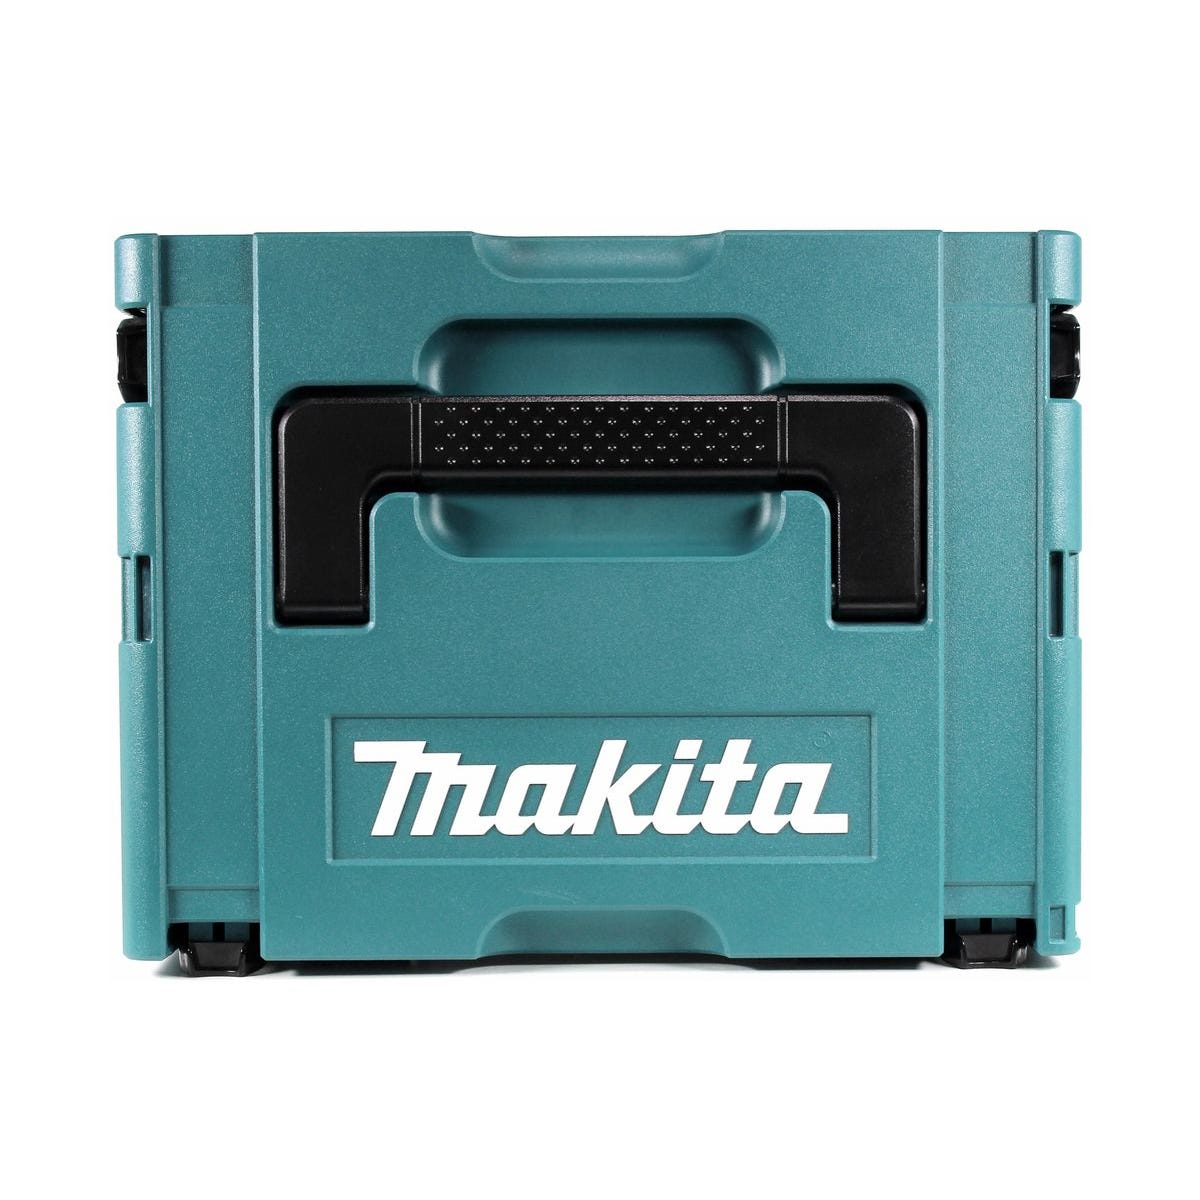 Makita DTD 155 RG1J Clé à choc sans fil 18 V 140 Nm 1/4'' Brushless + 1x batterie 6,0 Ah + chargeur + Makpac 2